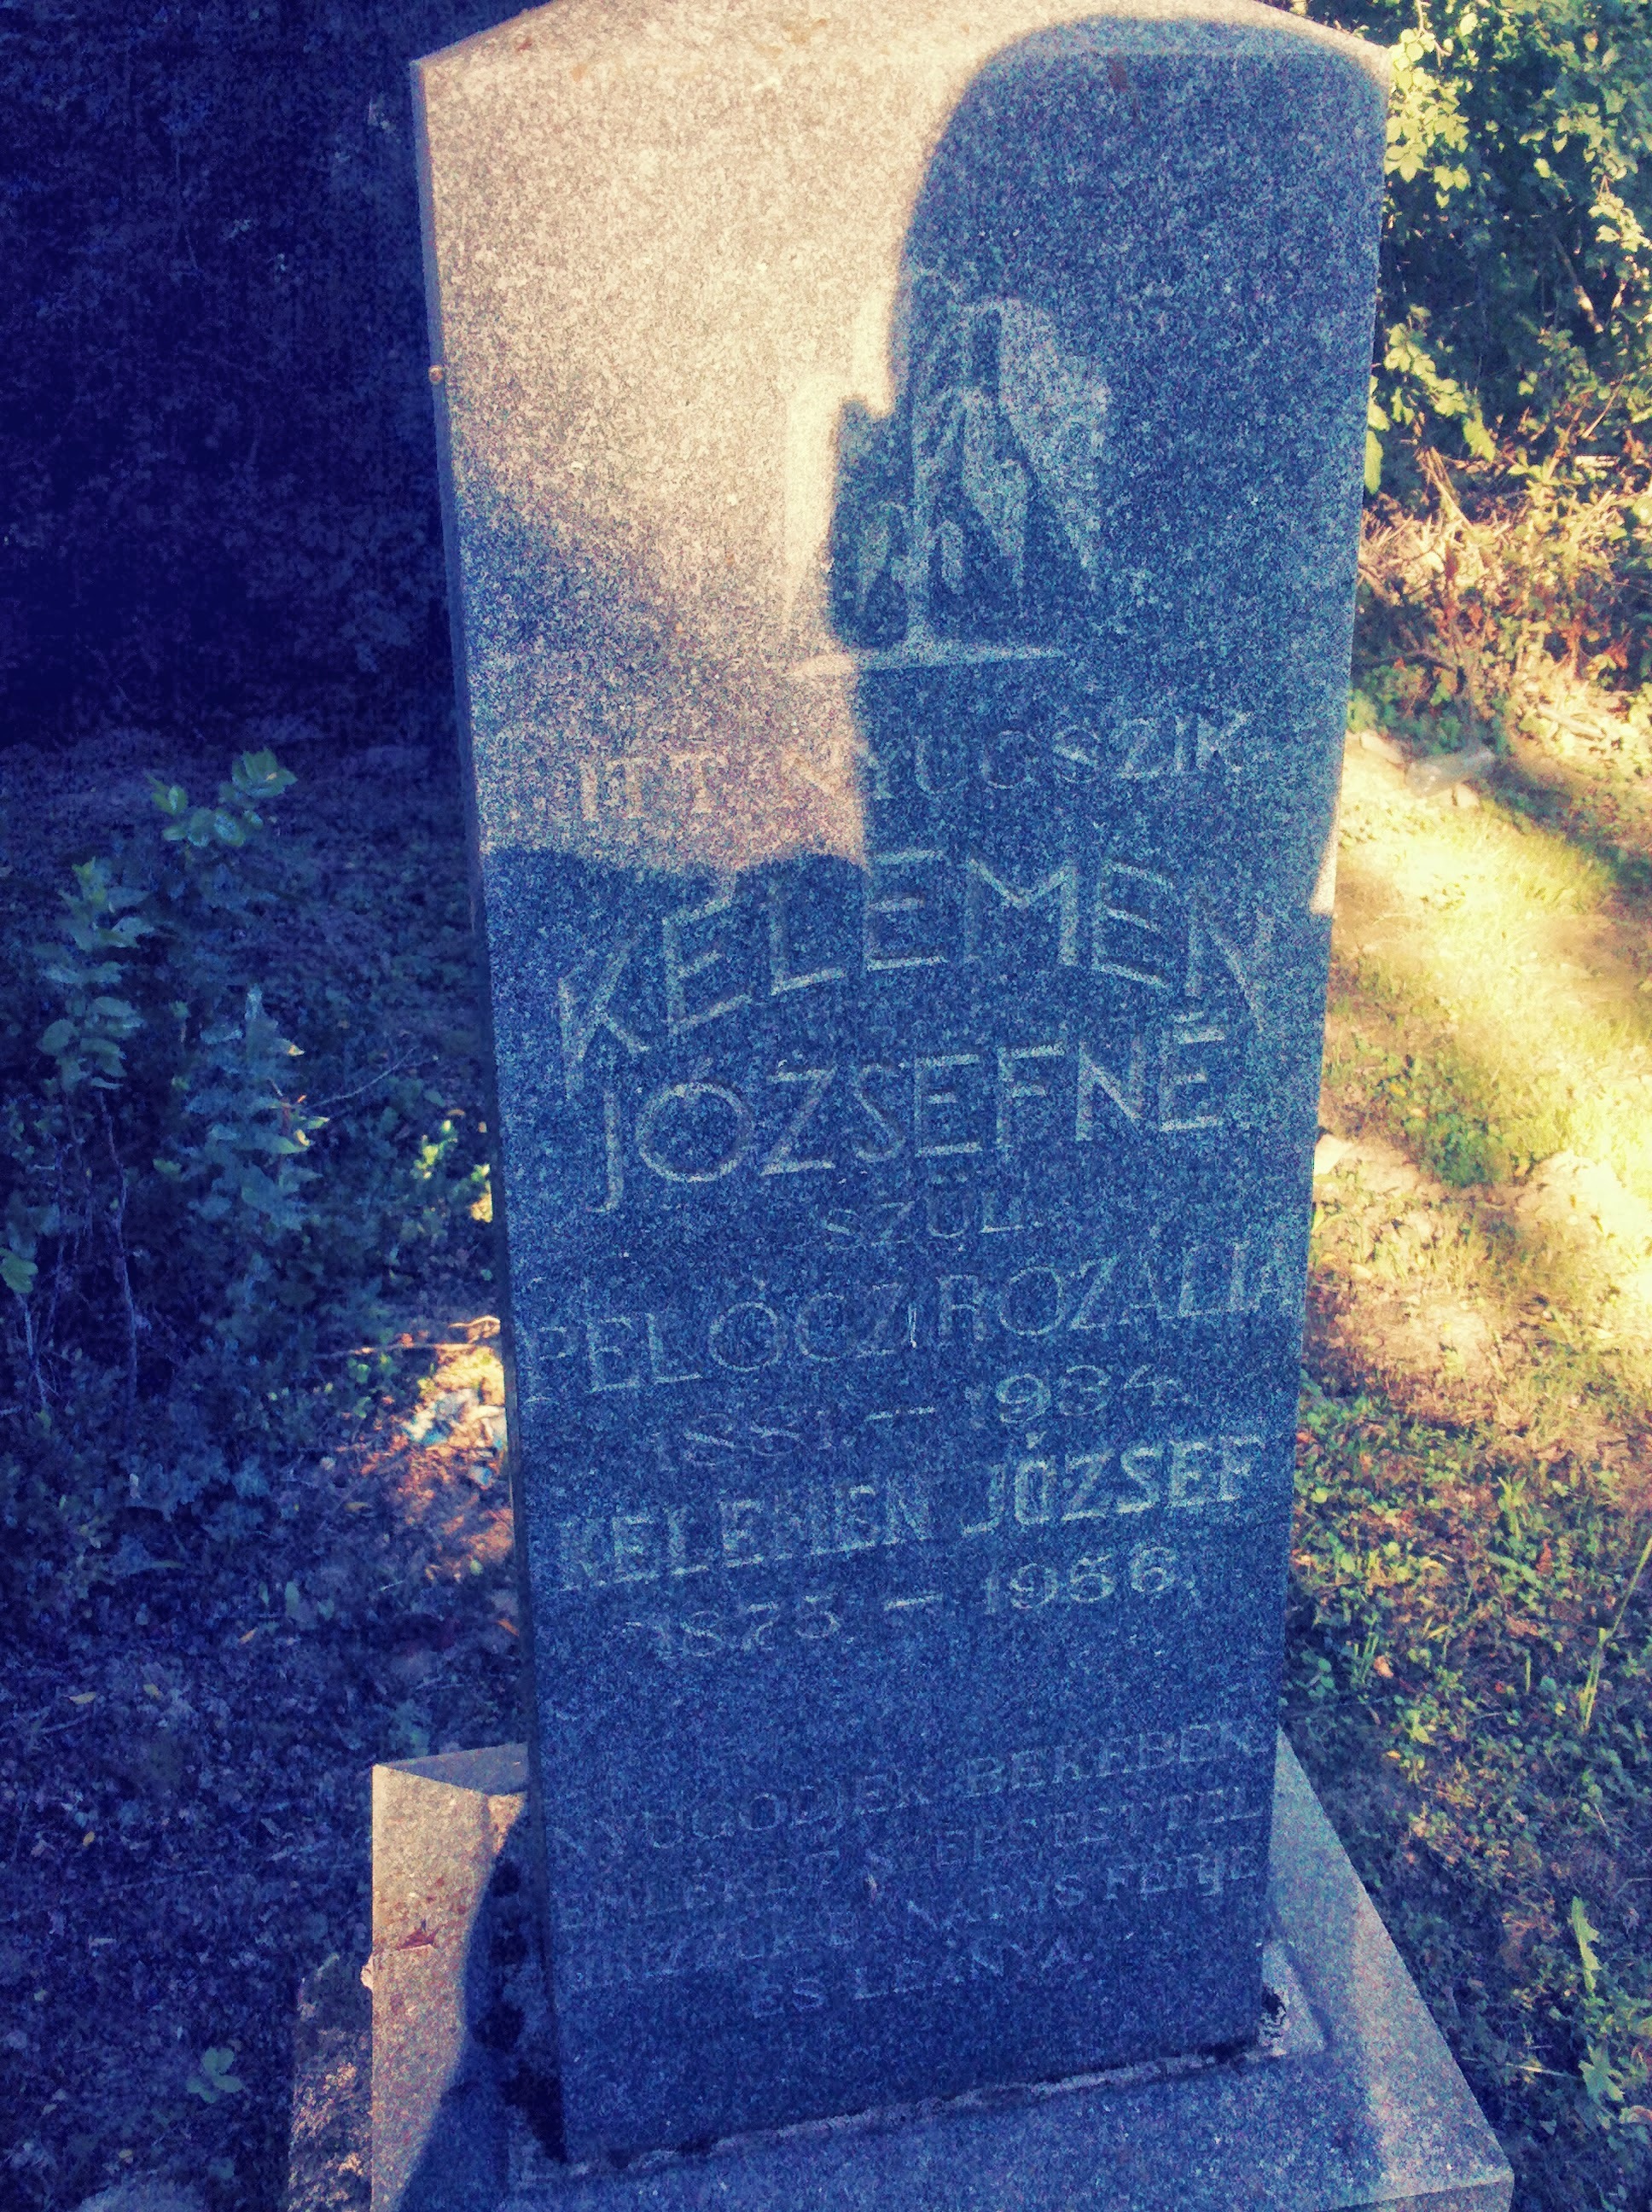 Kelemen József és Pelöcz Rozália sírköve (Somogyjád).jpg